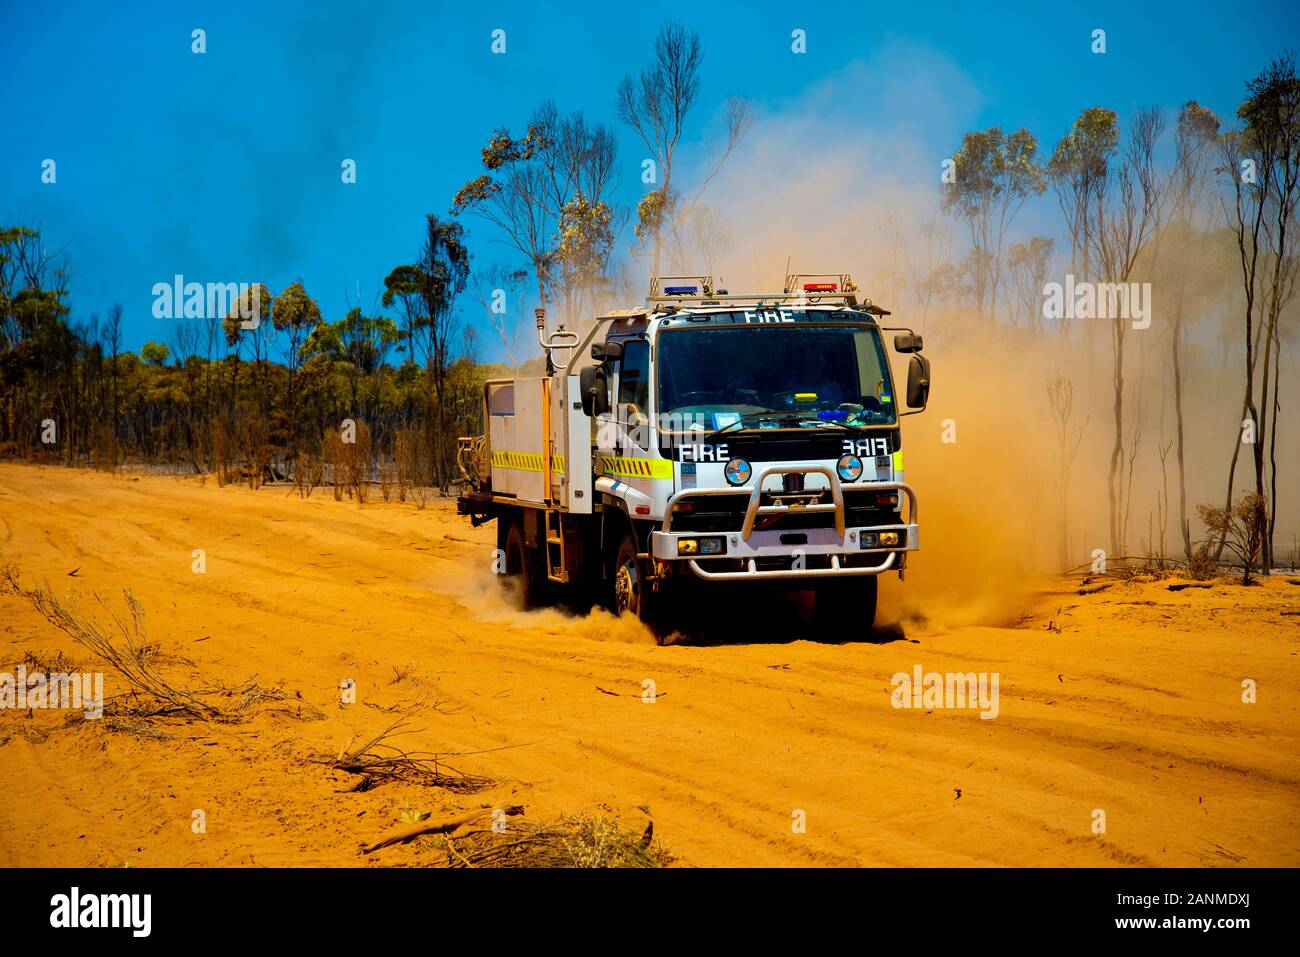 Mesures d'urgence incendie chariot dans la brousse - Australie Banque D'Images